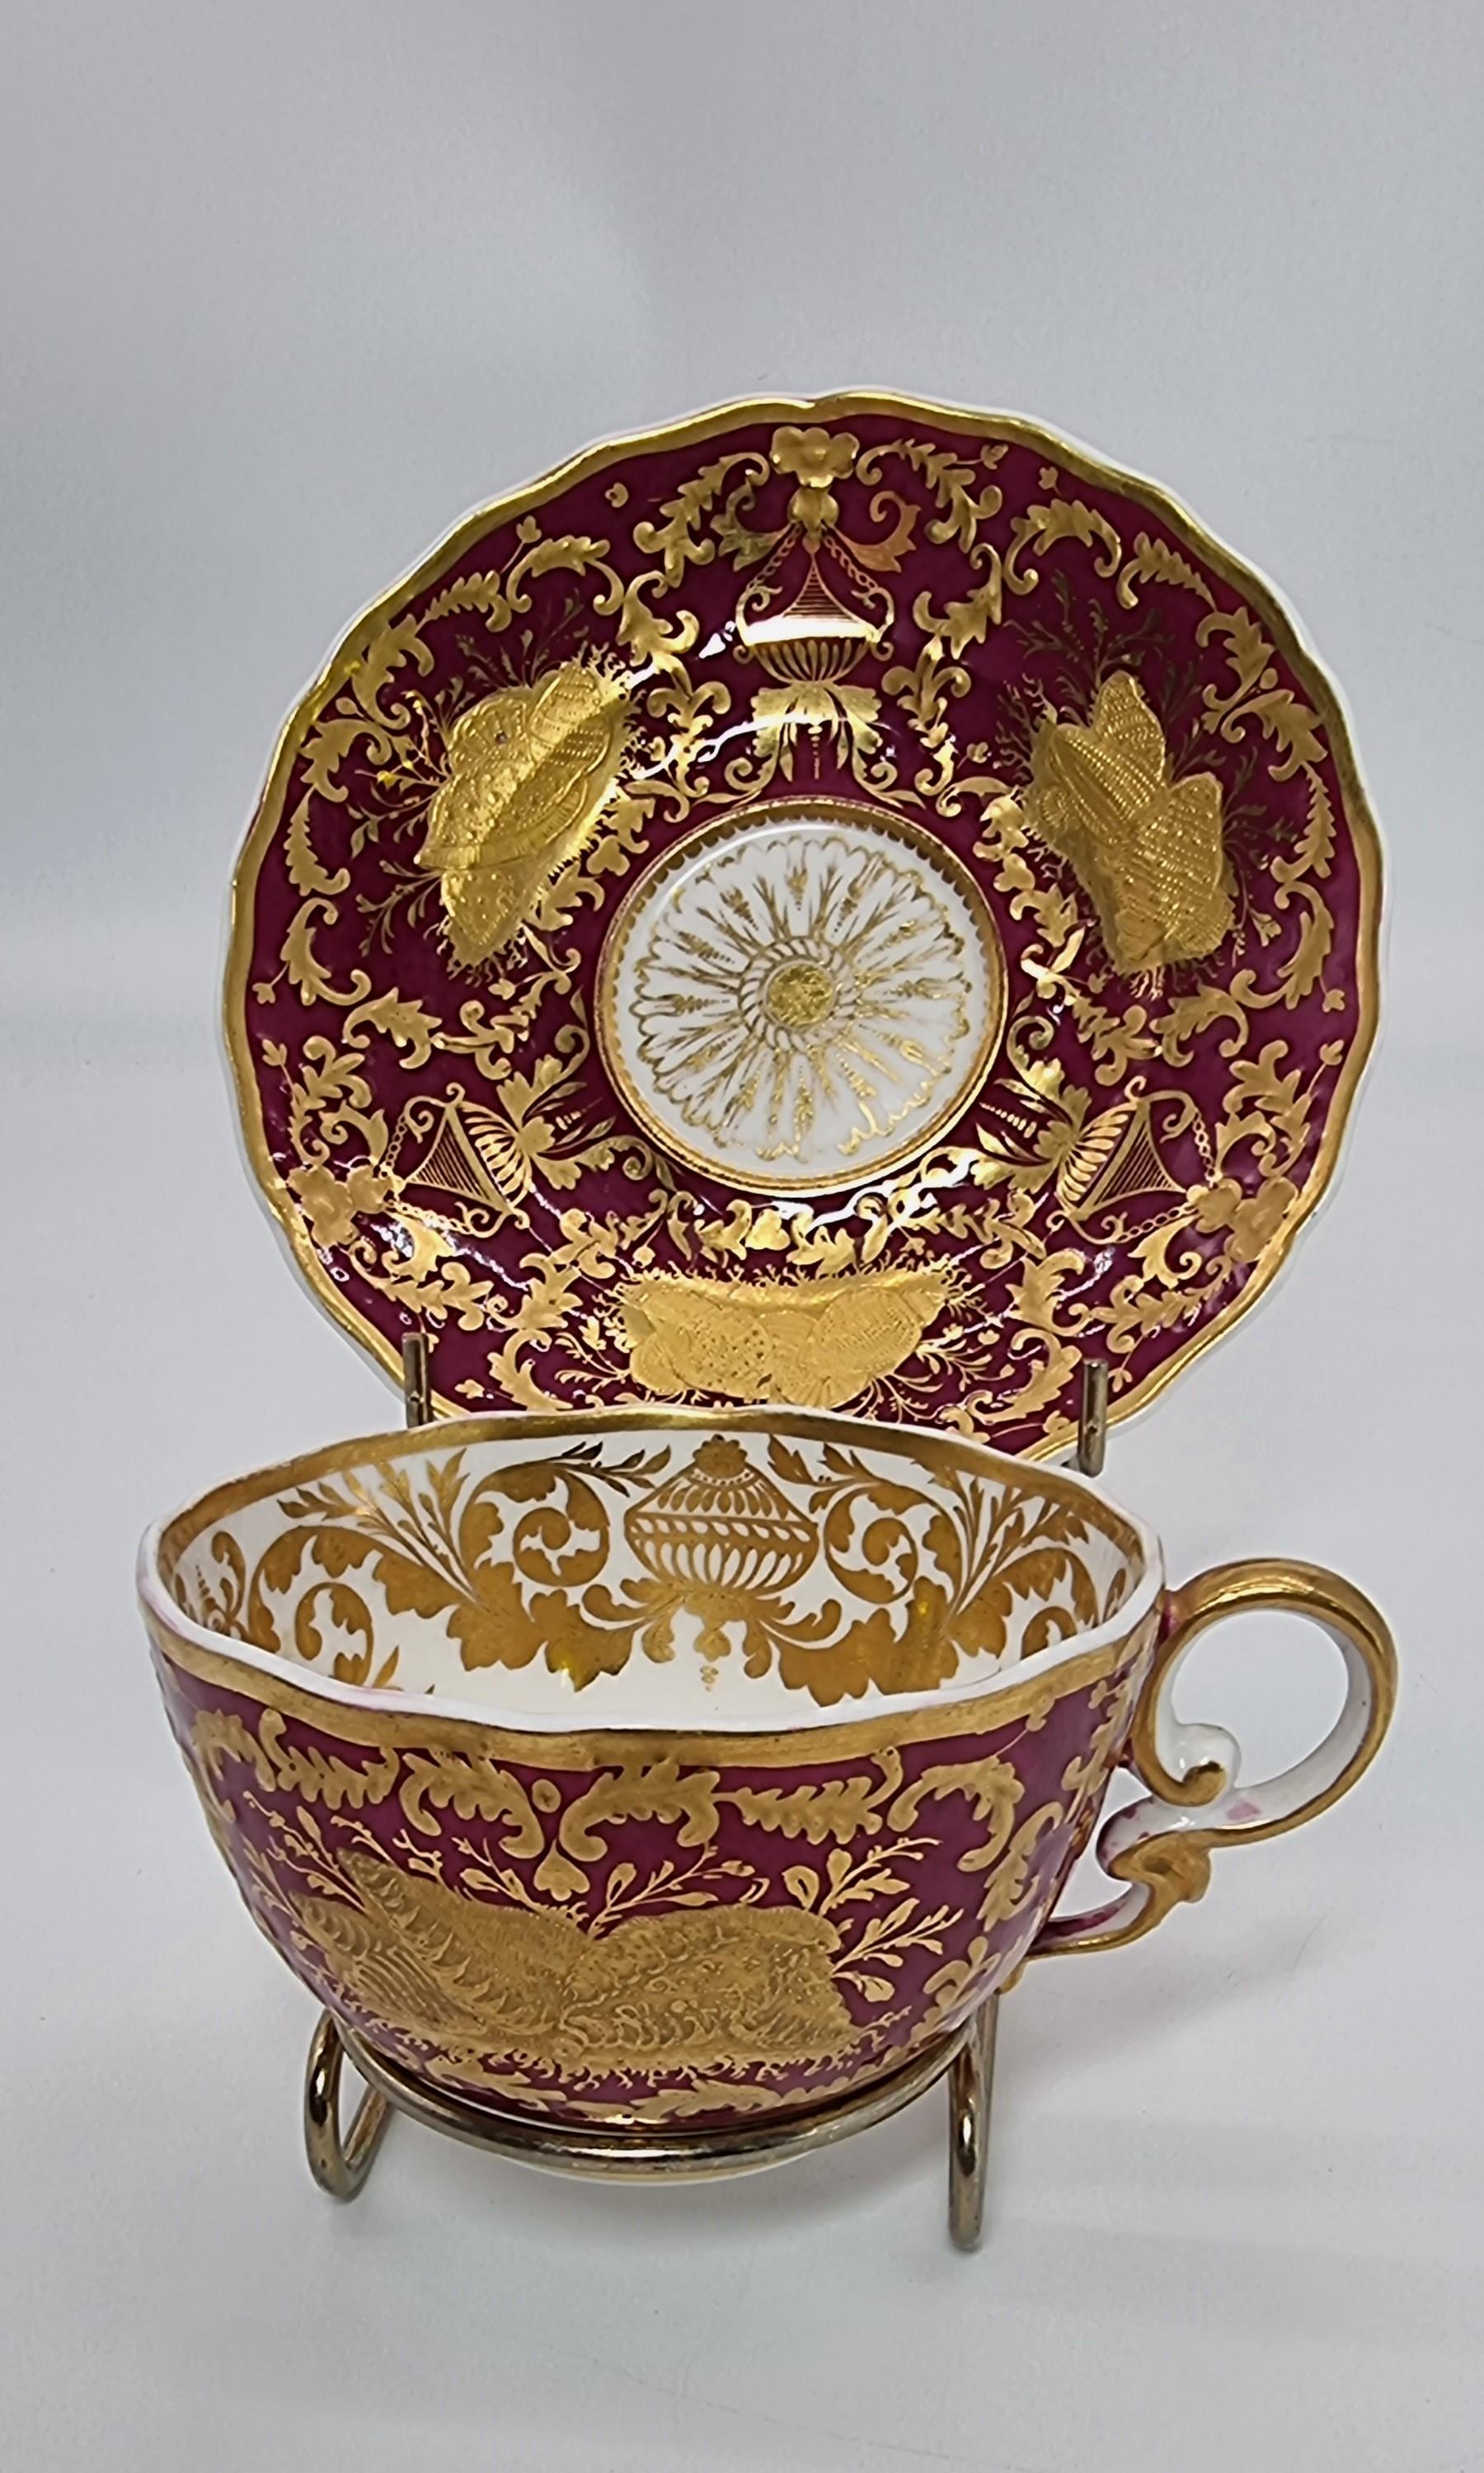 Une exquise et rare tasse et soucoupe de cabinet Spode du début du 19e siècle.
Cette belle tasse et cette soucoupe de cabinet Spode, richement décorées, ont été fabriquées dans cette manufacture de porcelaine anglaise de haute qualité, vers 1830. 